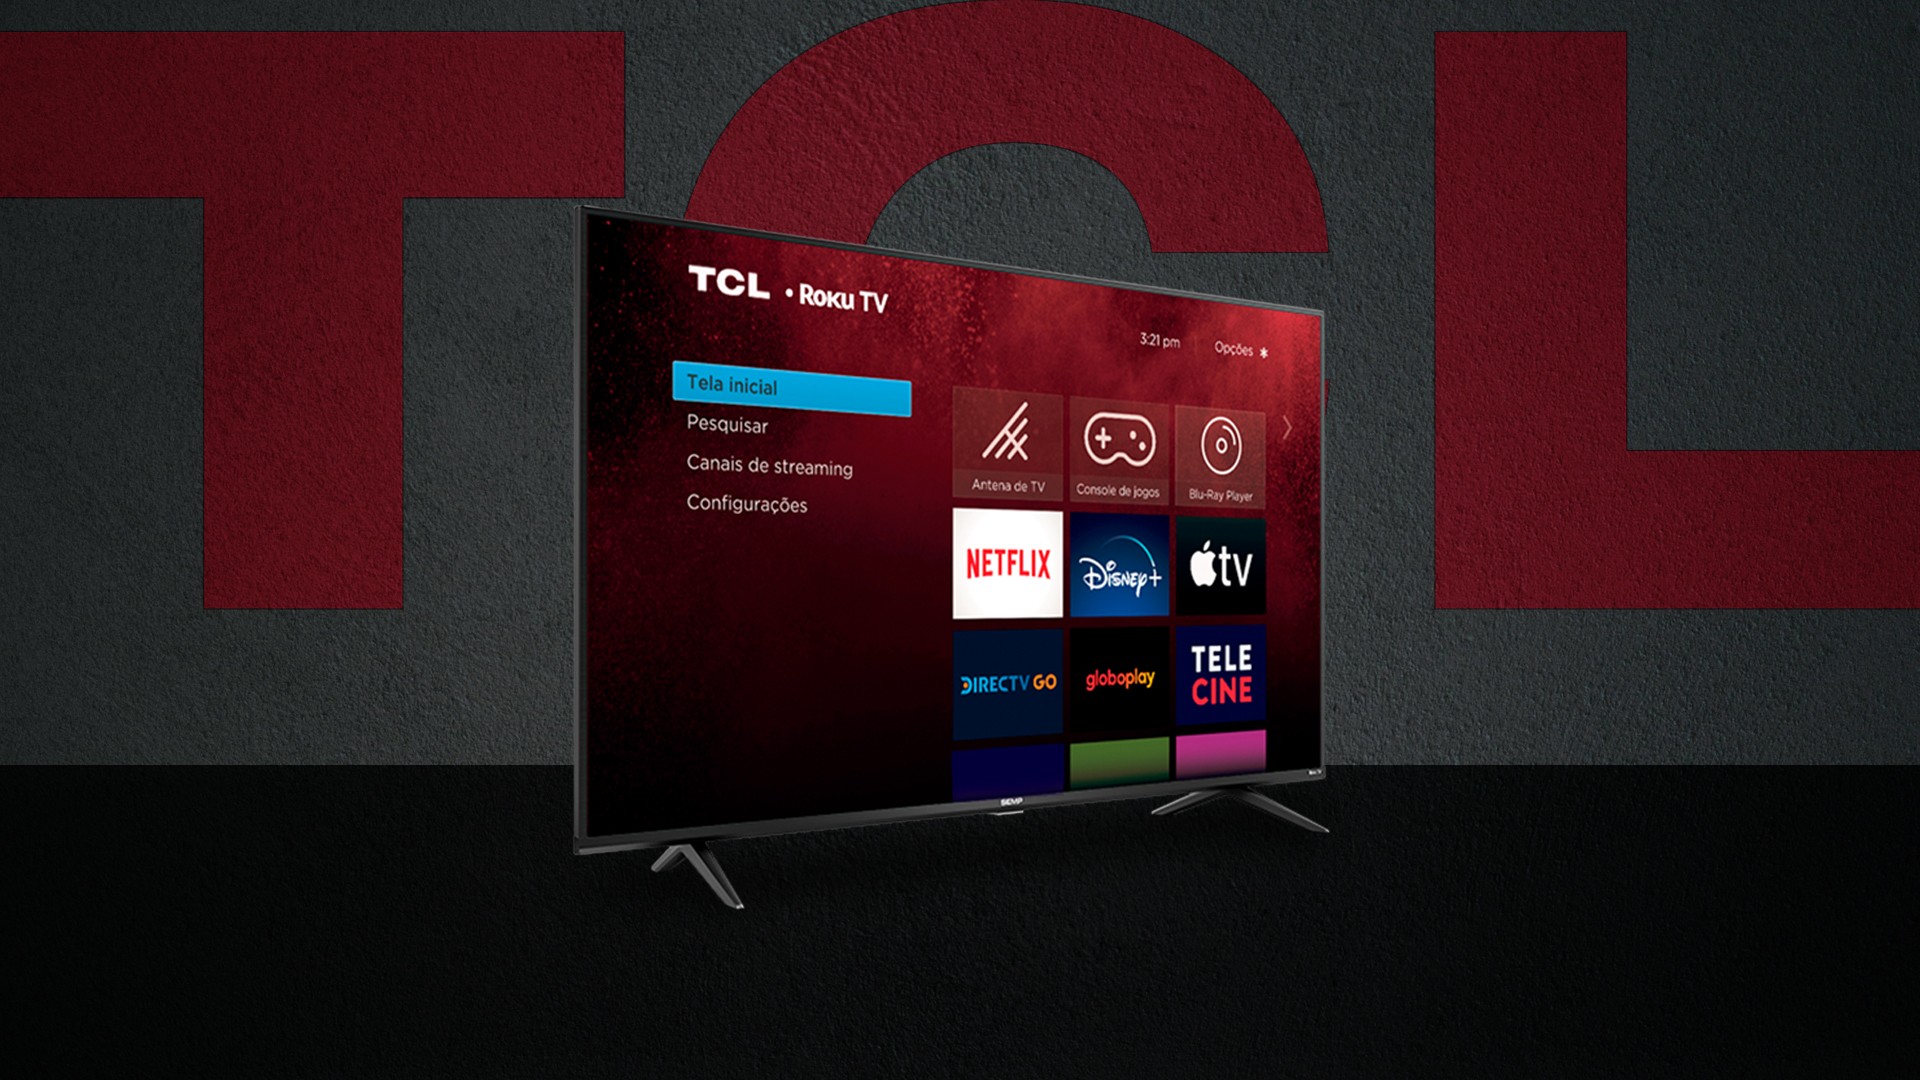 TCL anuncia novas Smart TVs com Roku TV a partir de R$ 1.939 5